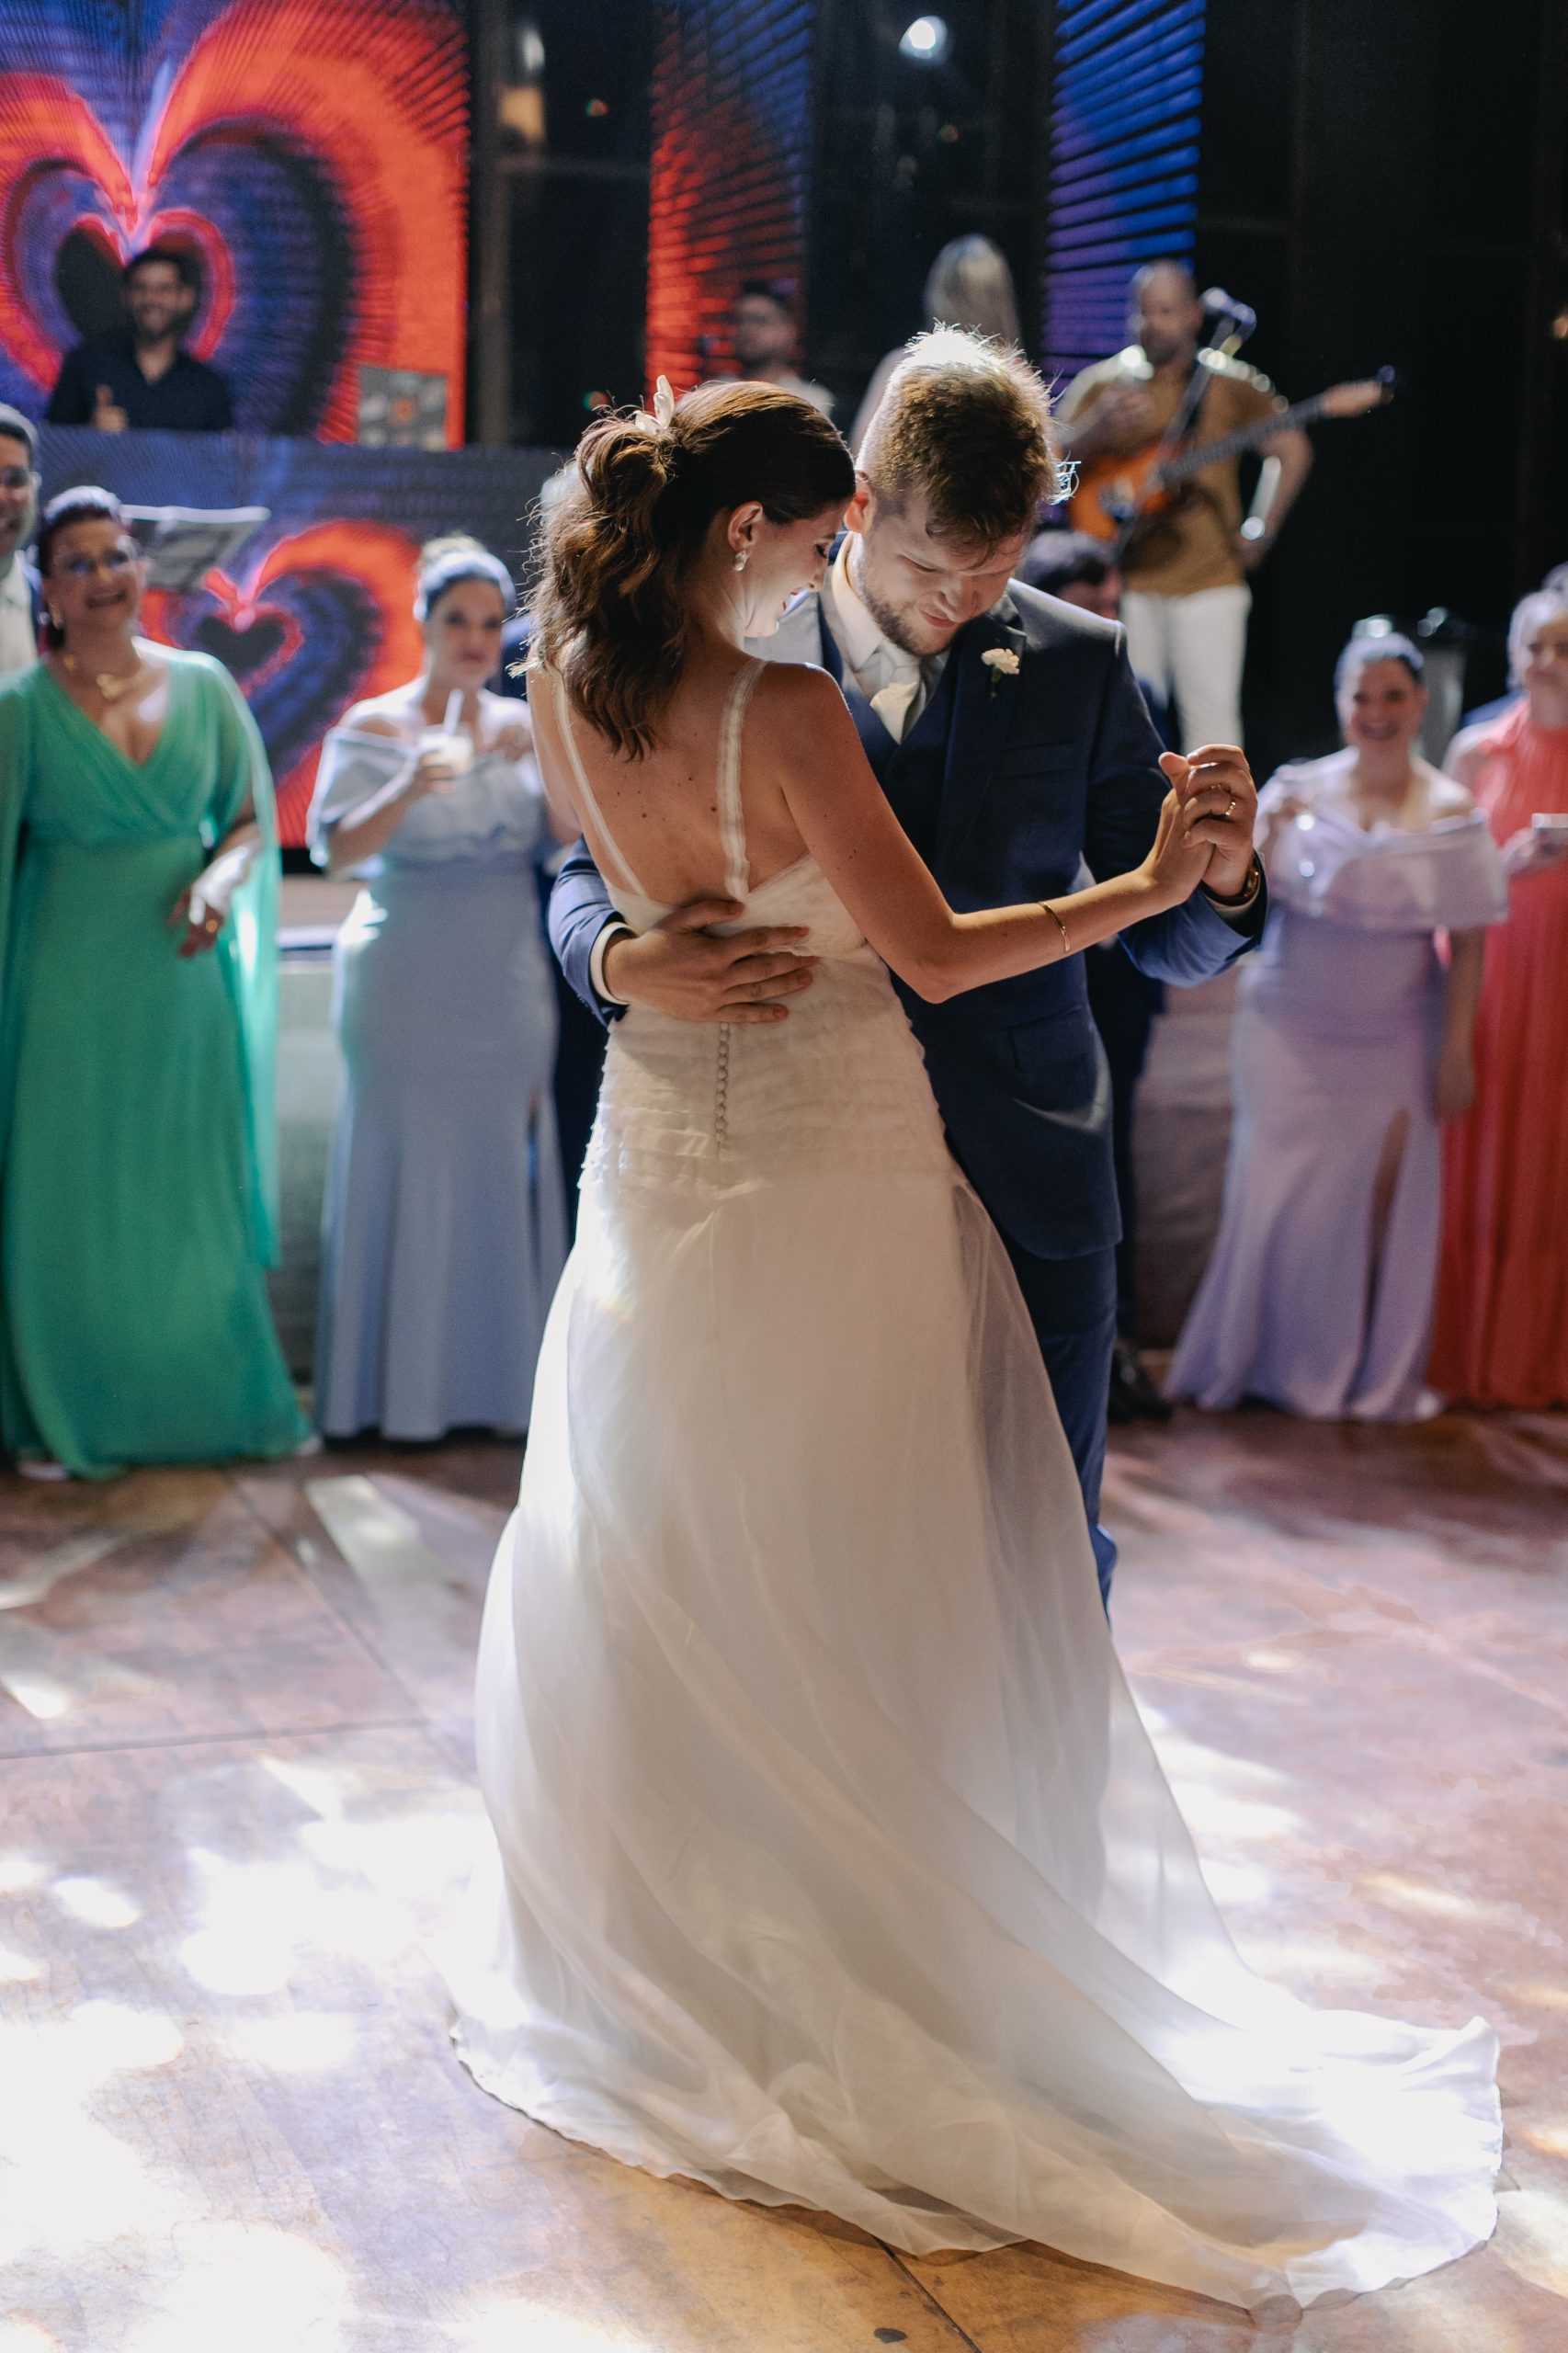 Dança dos noivos | Foto: Flora Pimentel